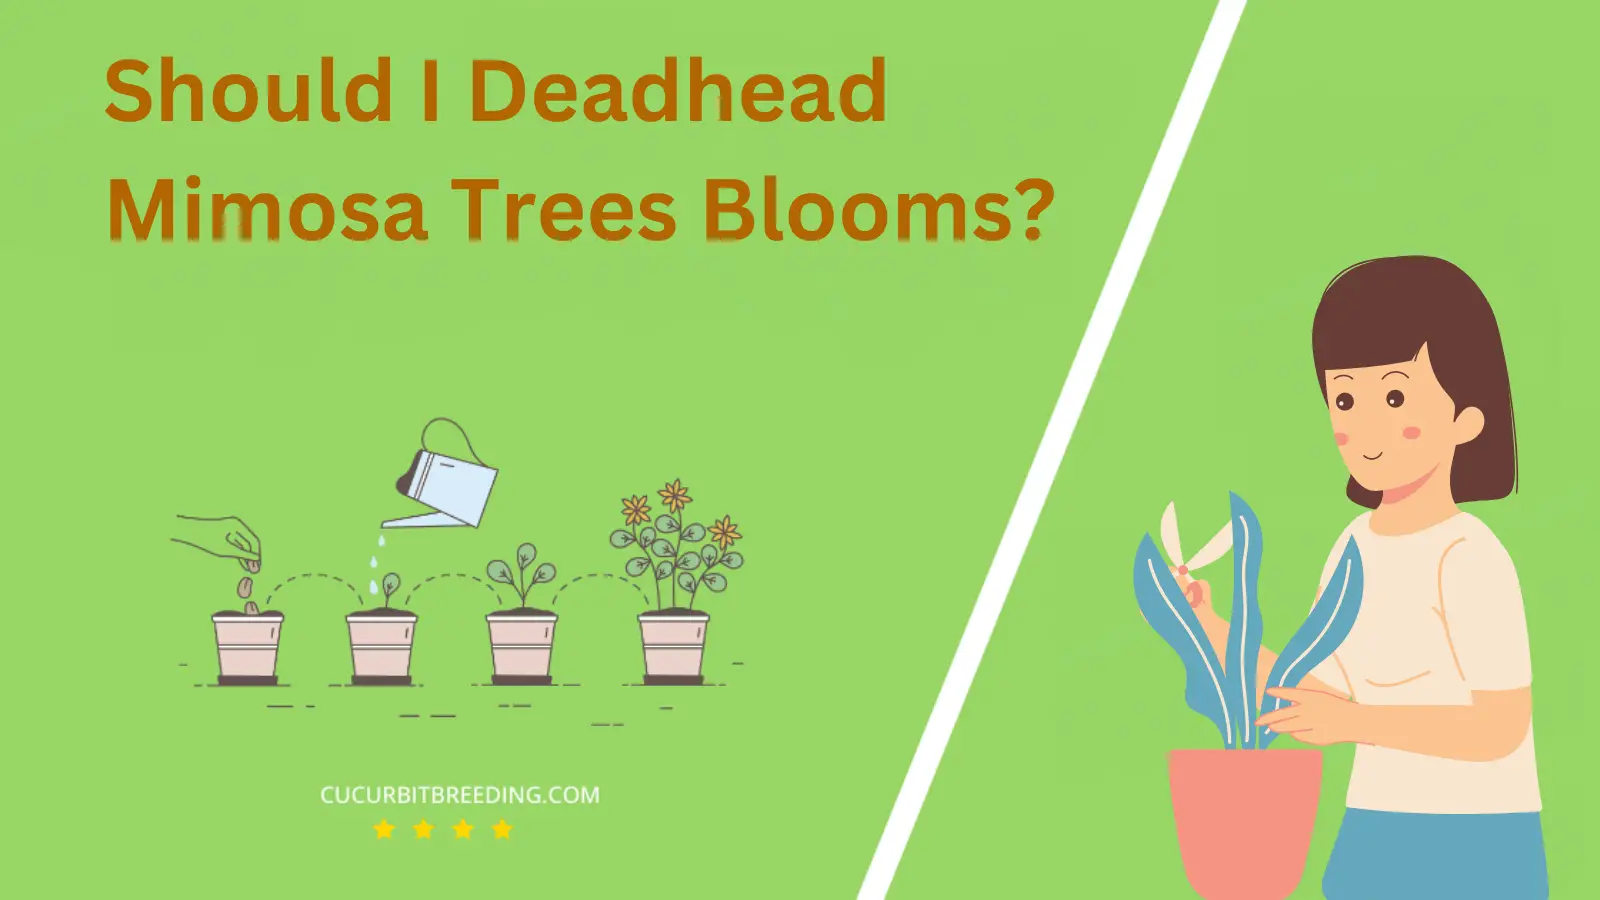 Should I Deadhead Mimosa Trees Blooms?